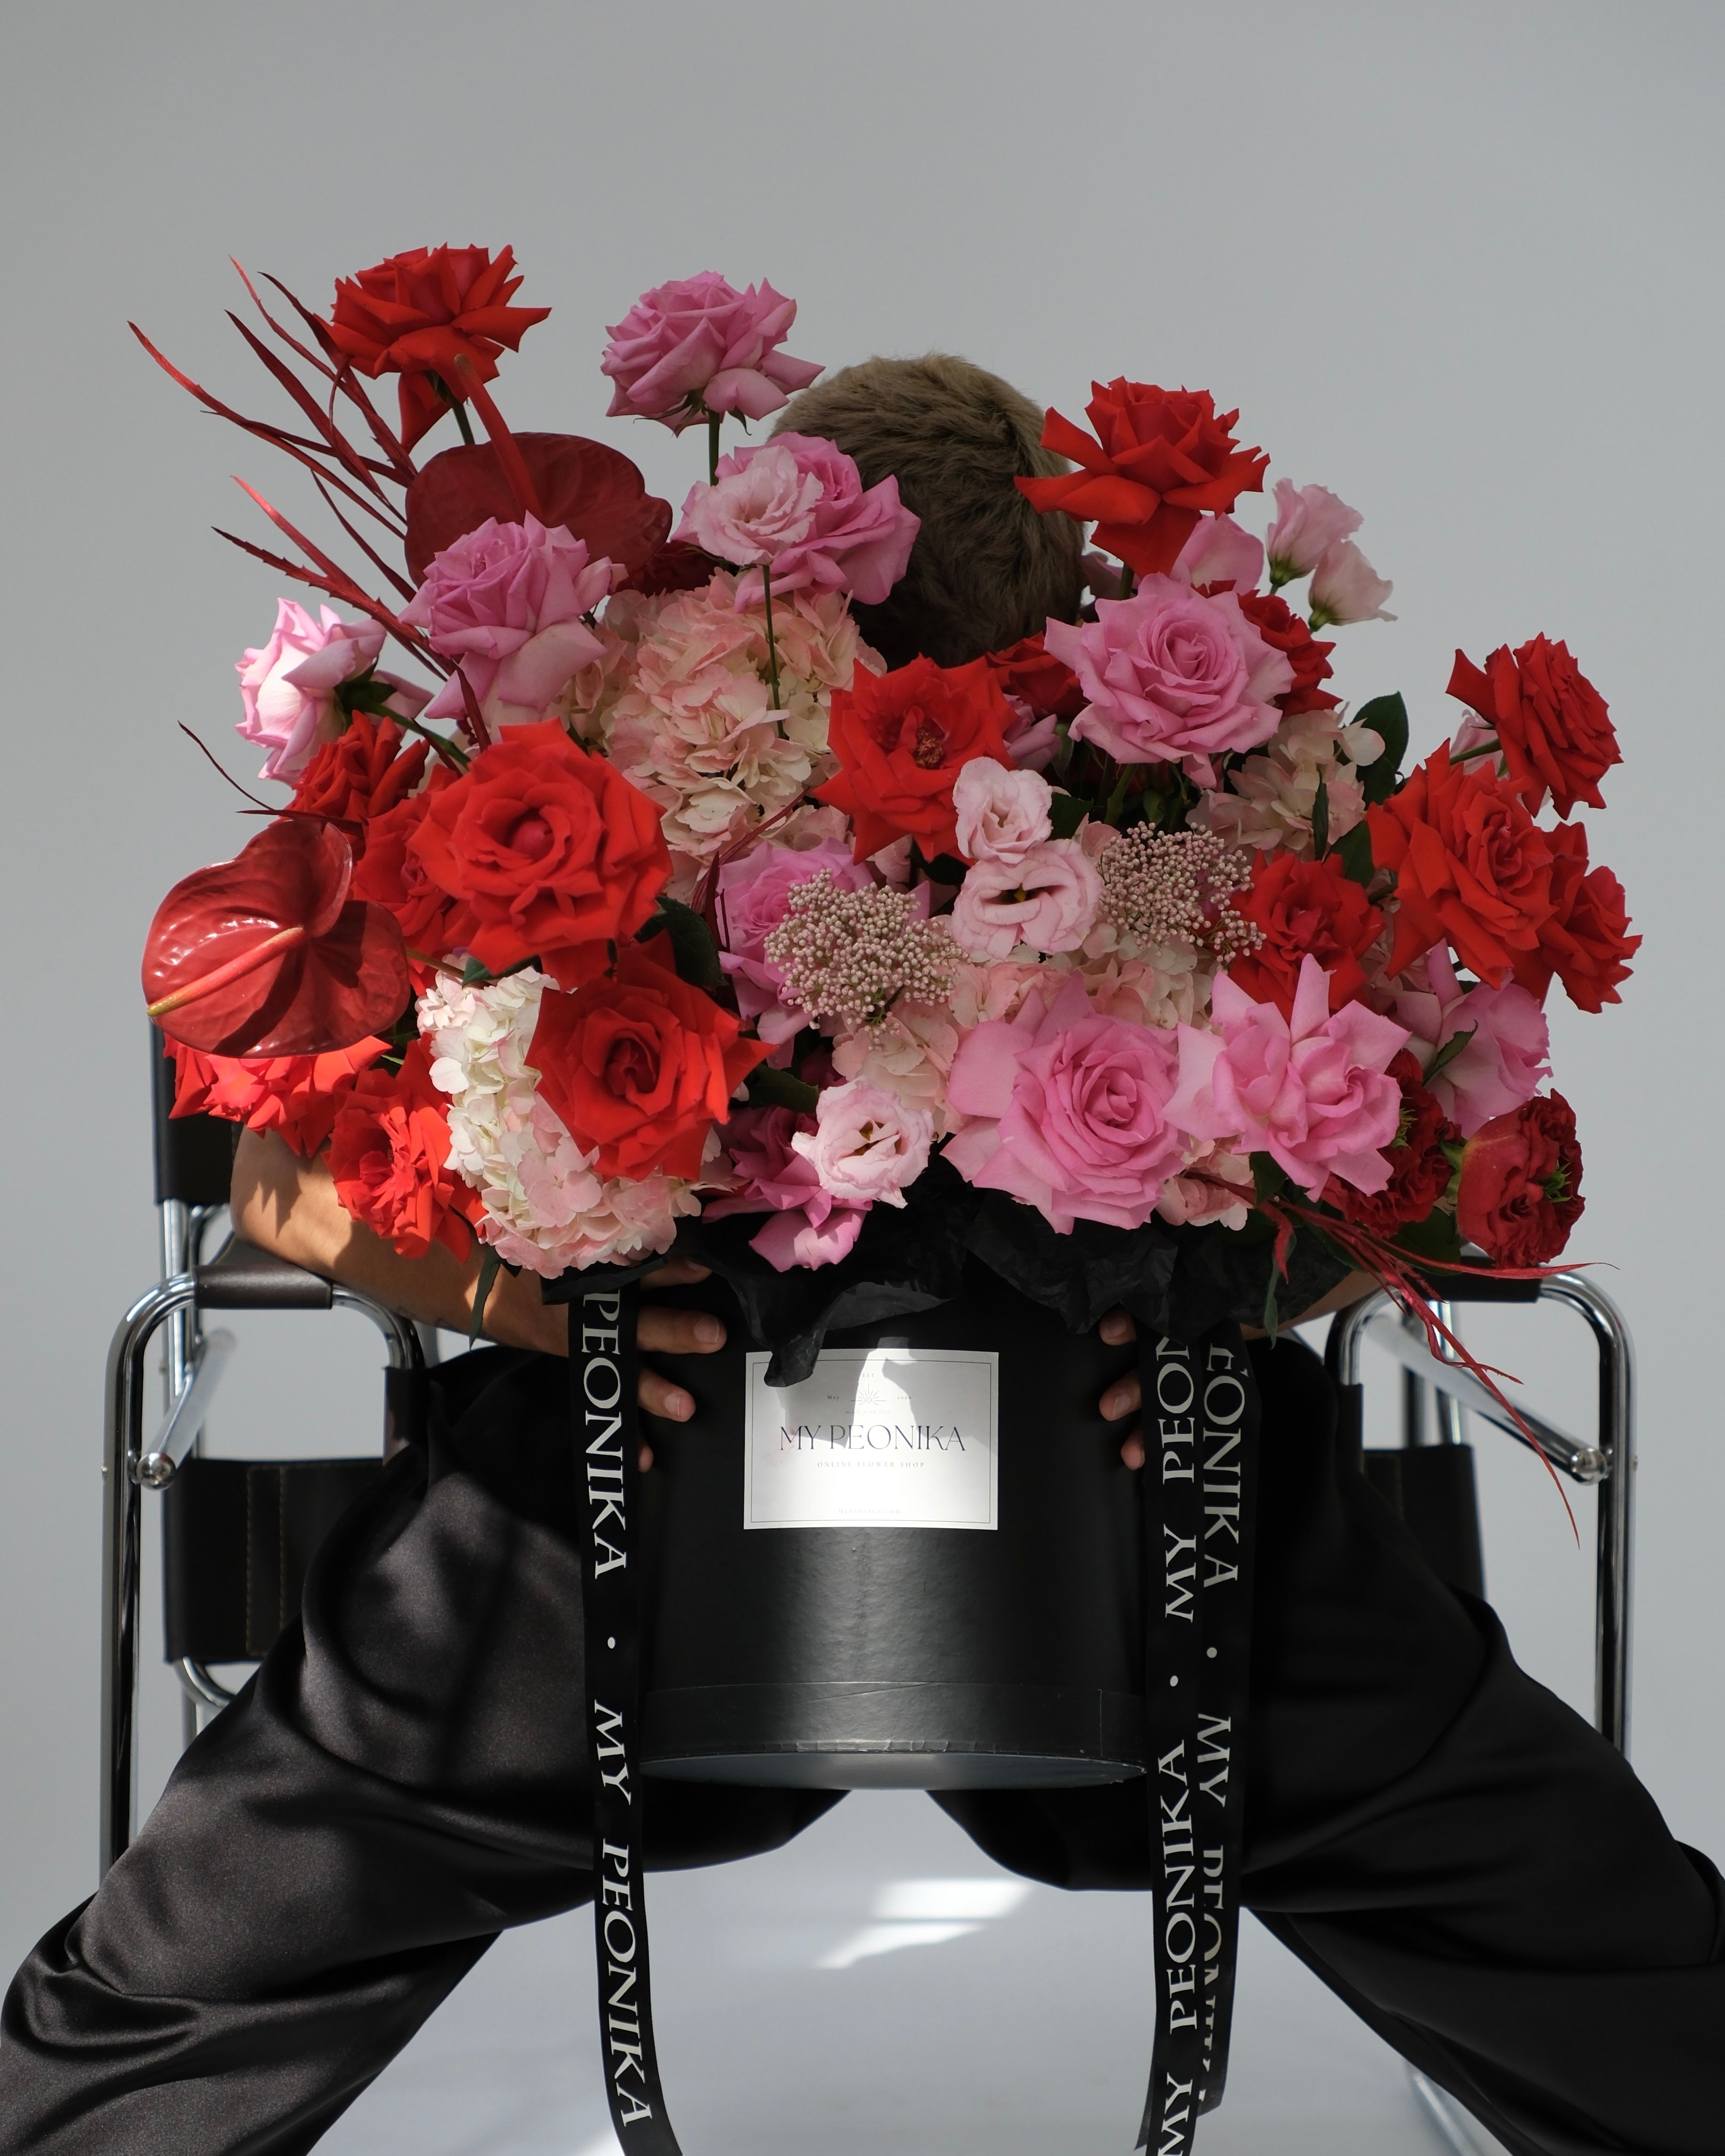 Flower box “Fallen angel” - garden roses, hydrangeas, anthuriums